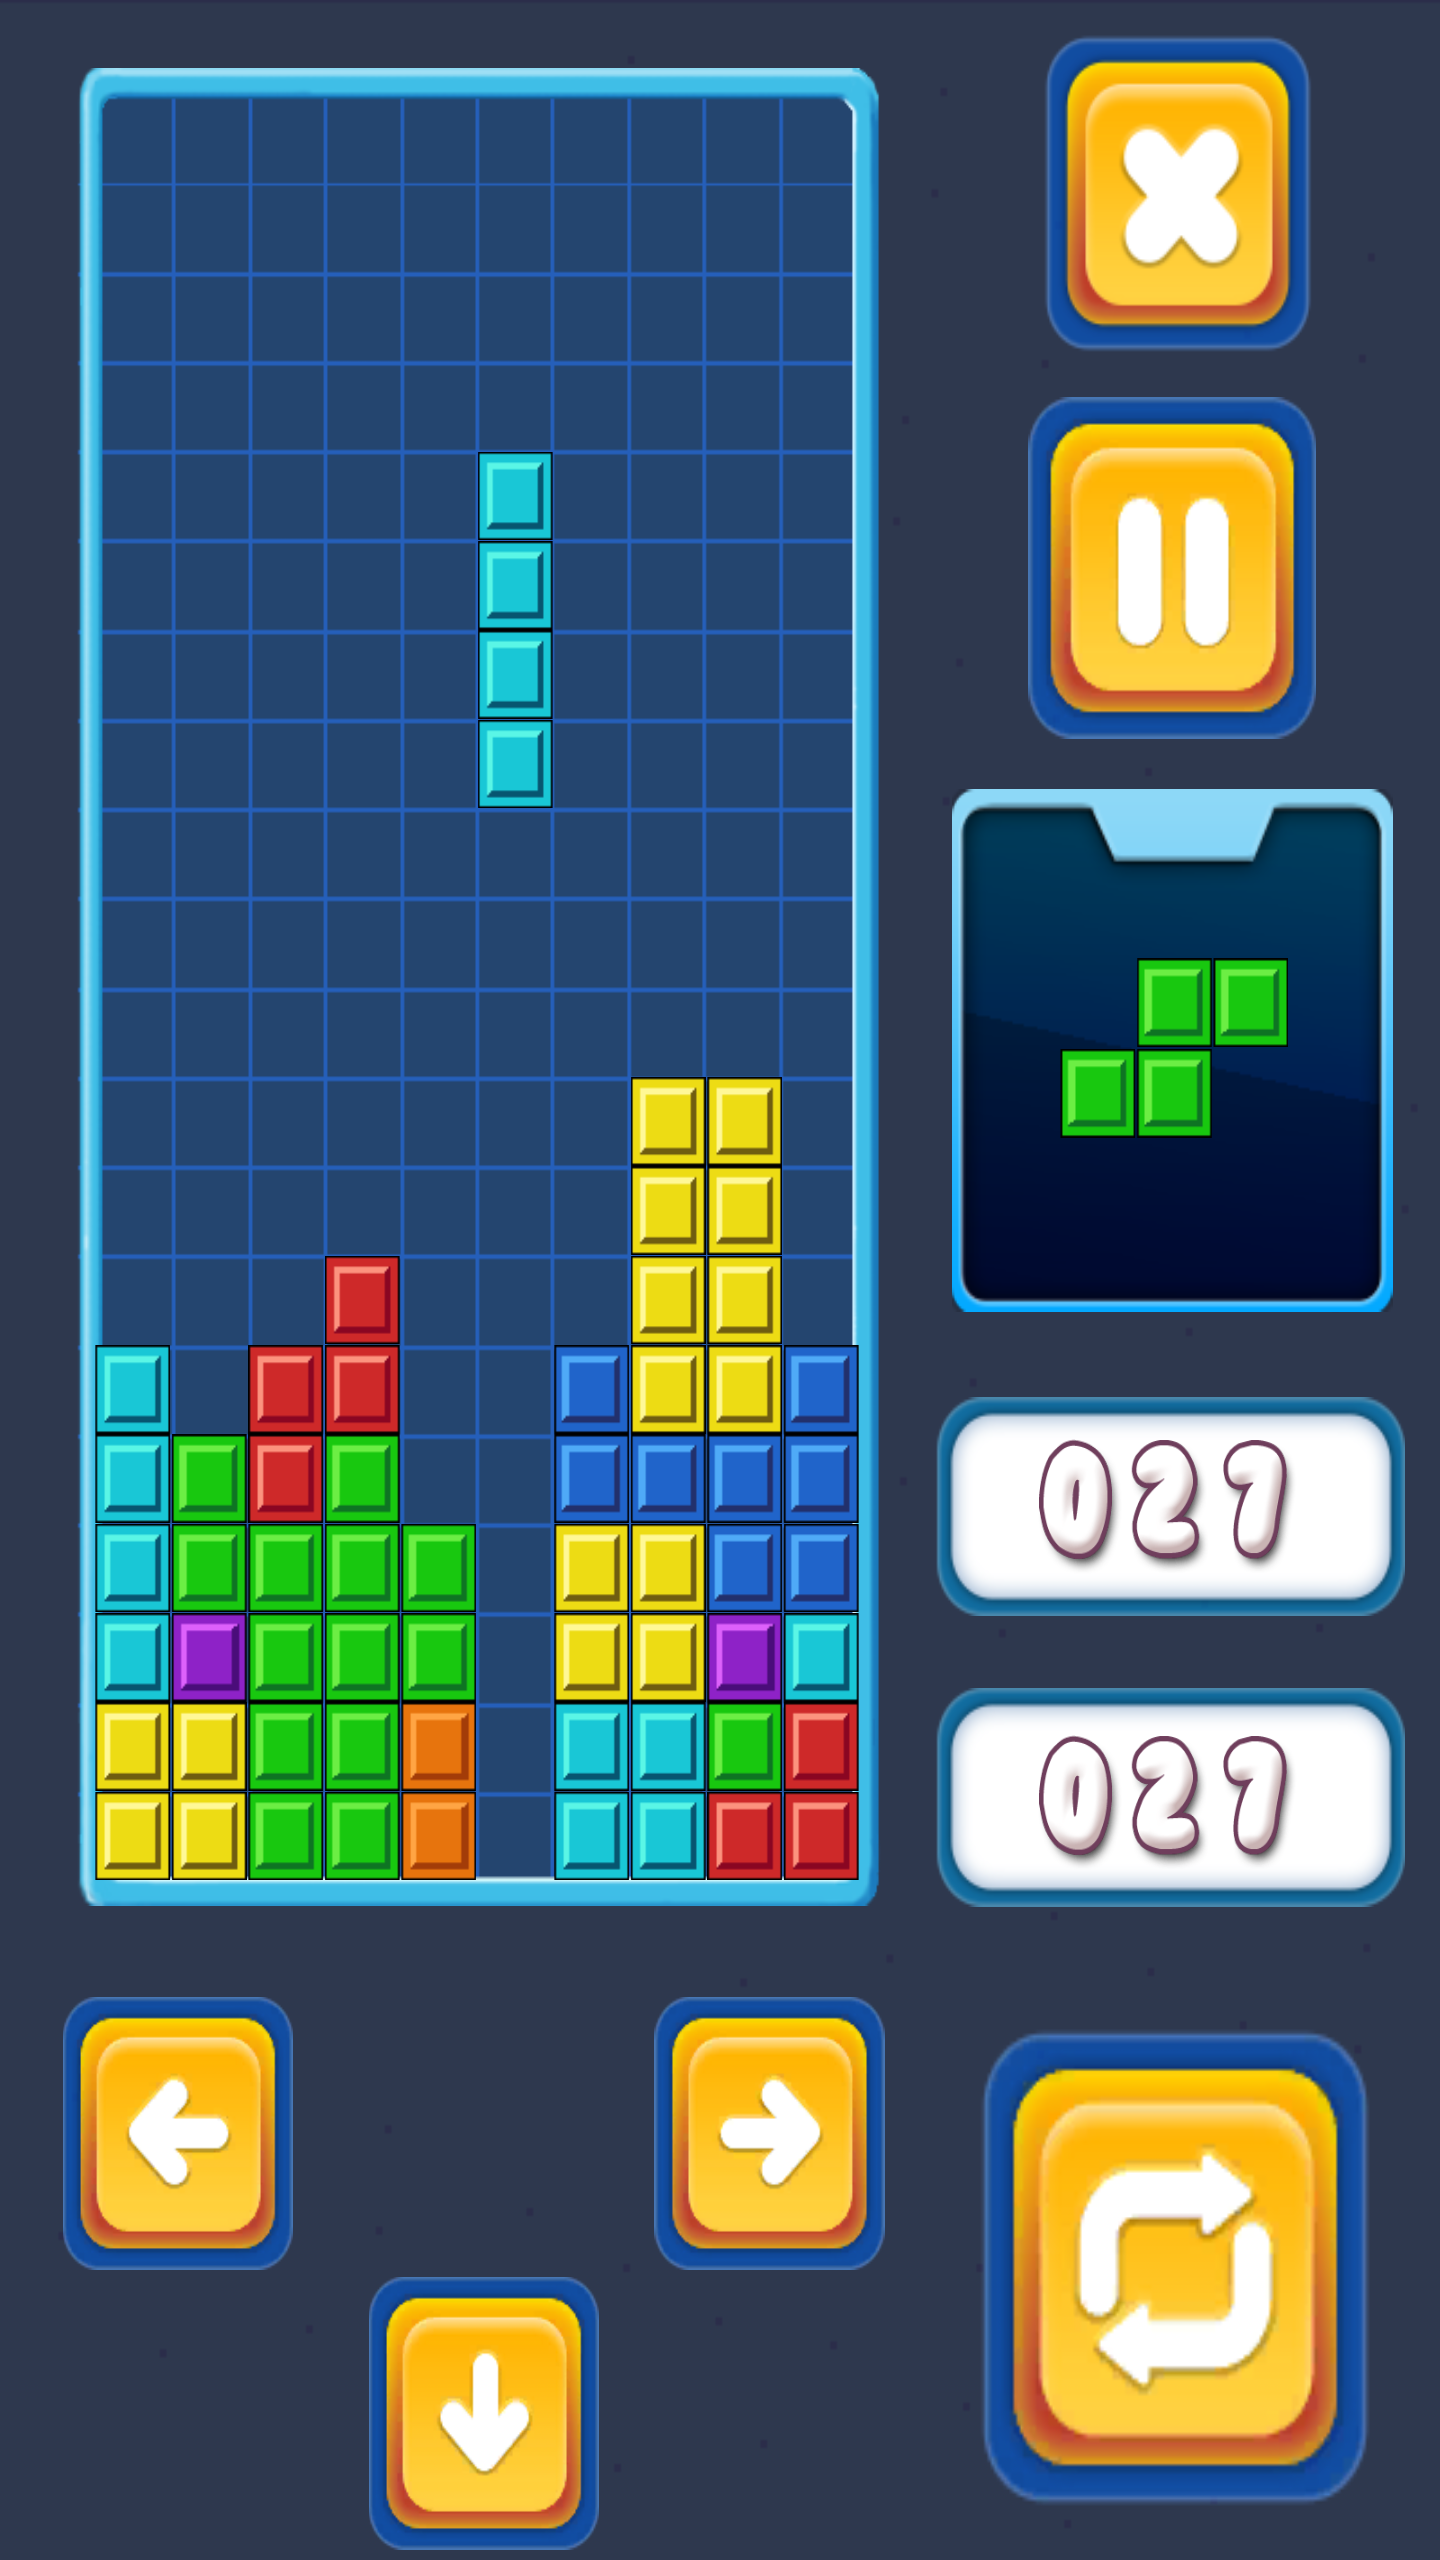 Brick Classic Tetrisのキャプチャ